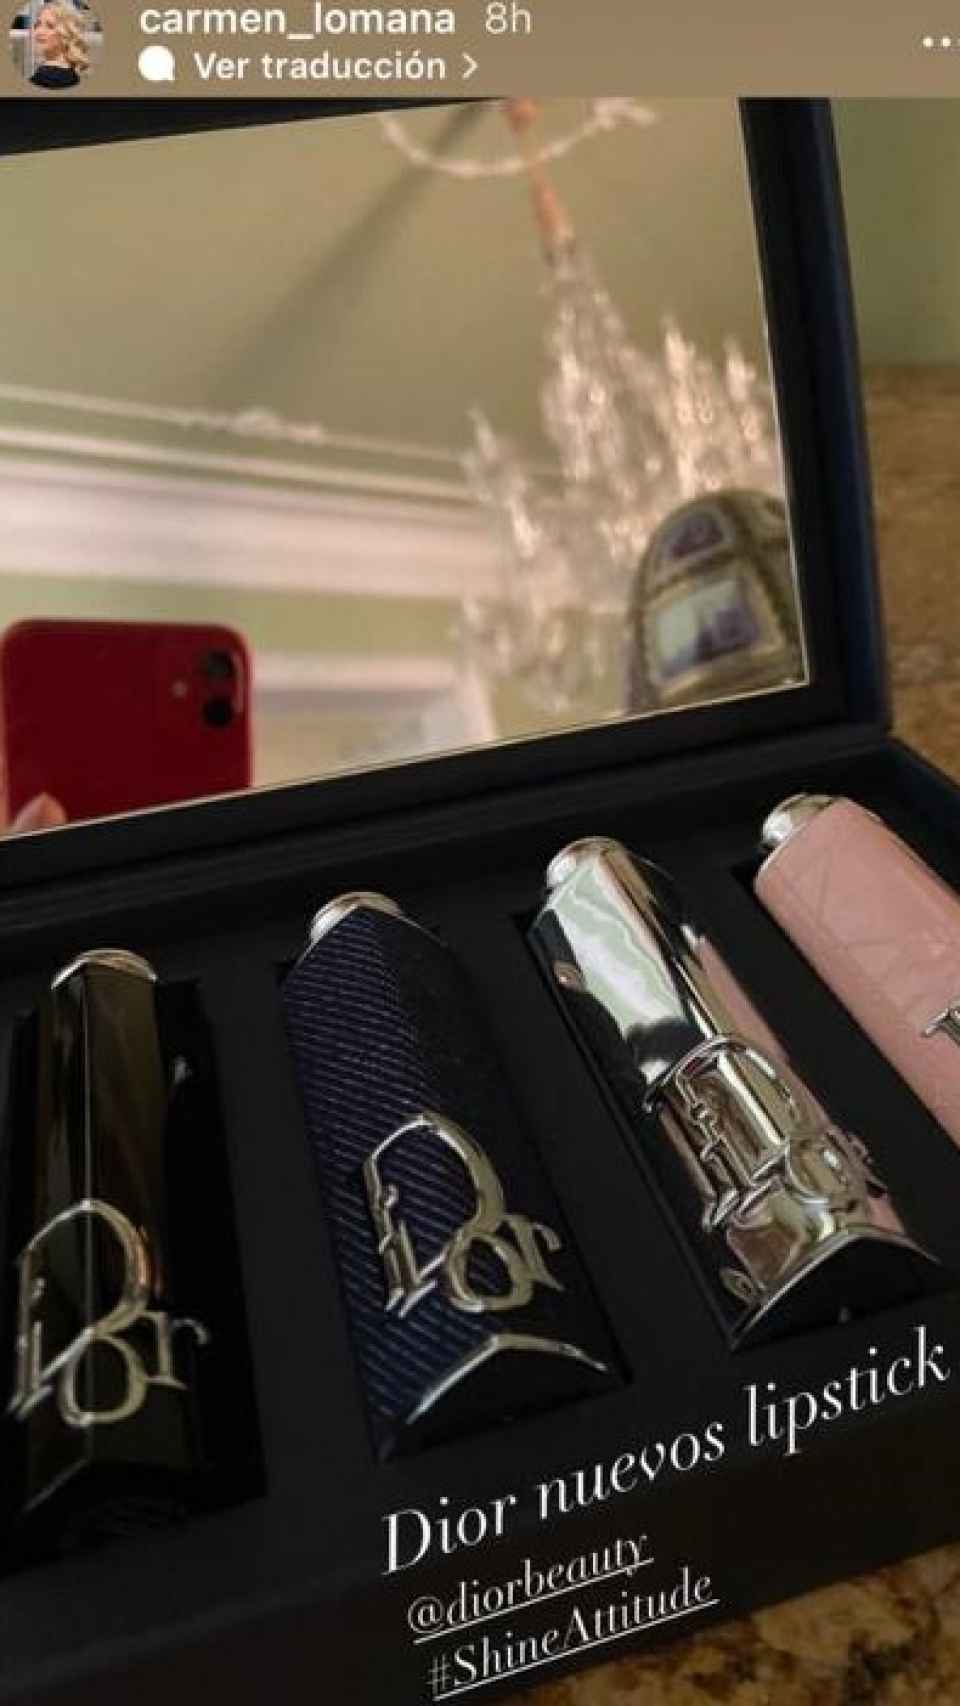 Carmen Lomana ha mostrado en sus redes sociales la nueva barra de labios de Dior.